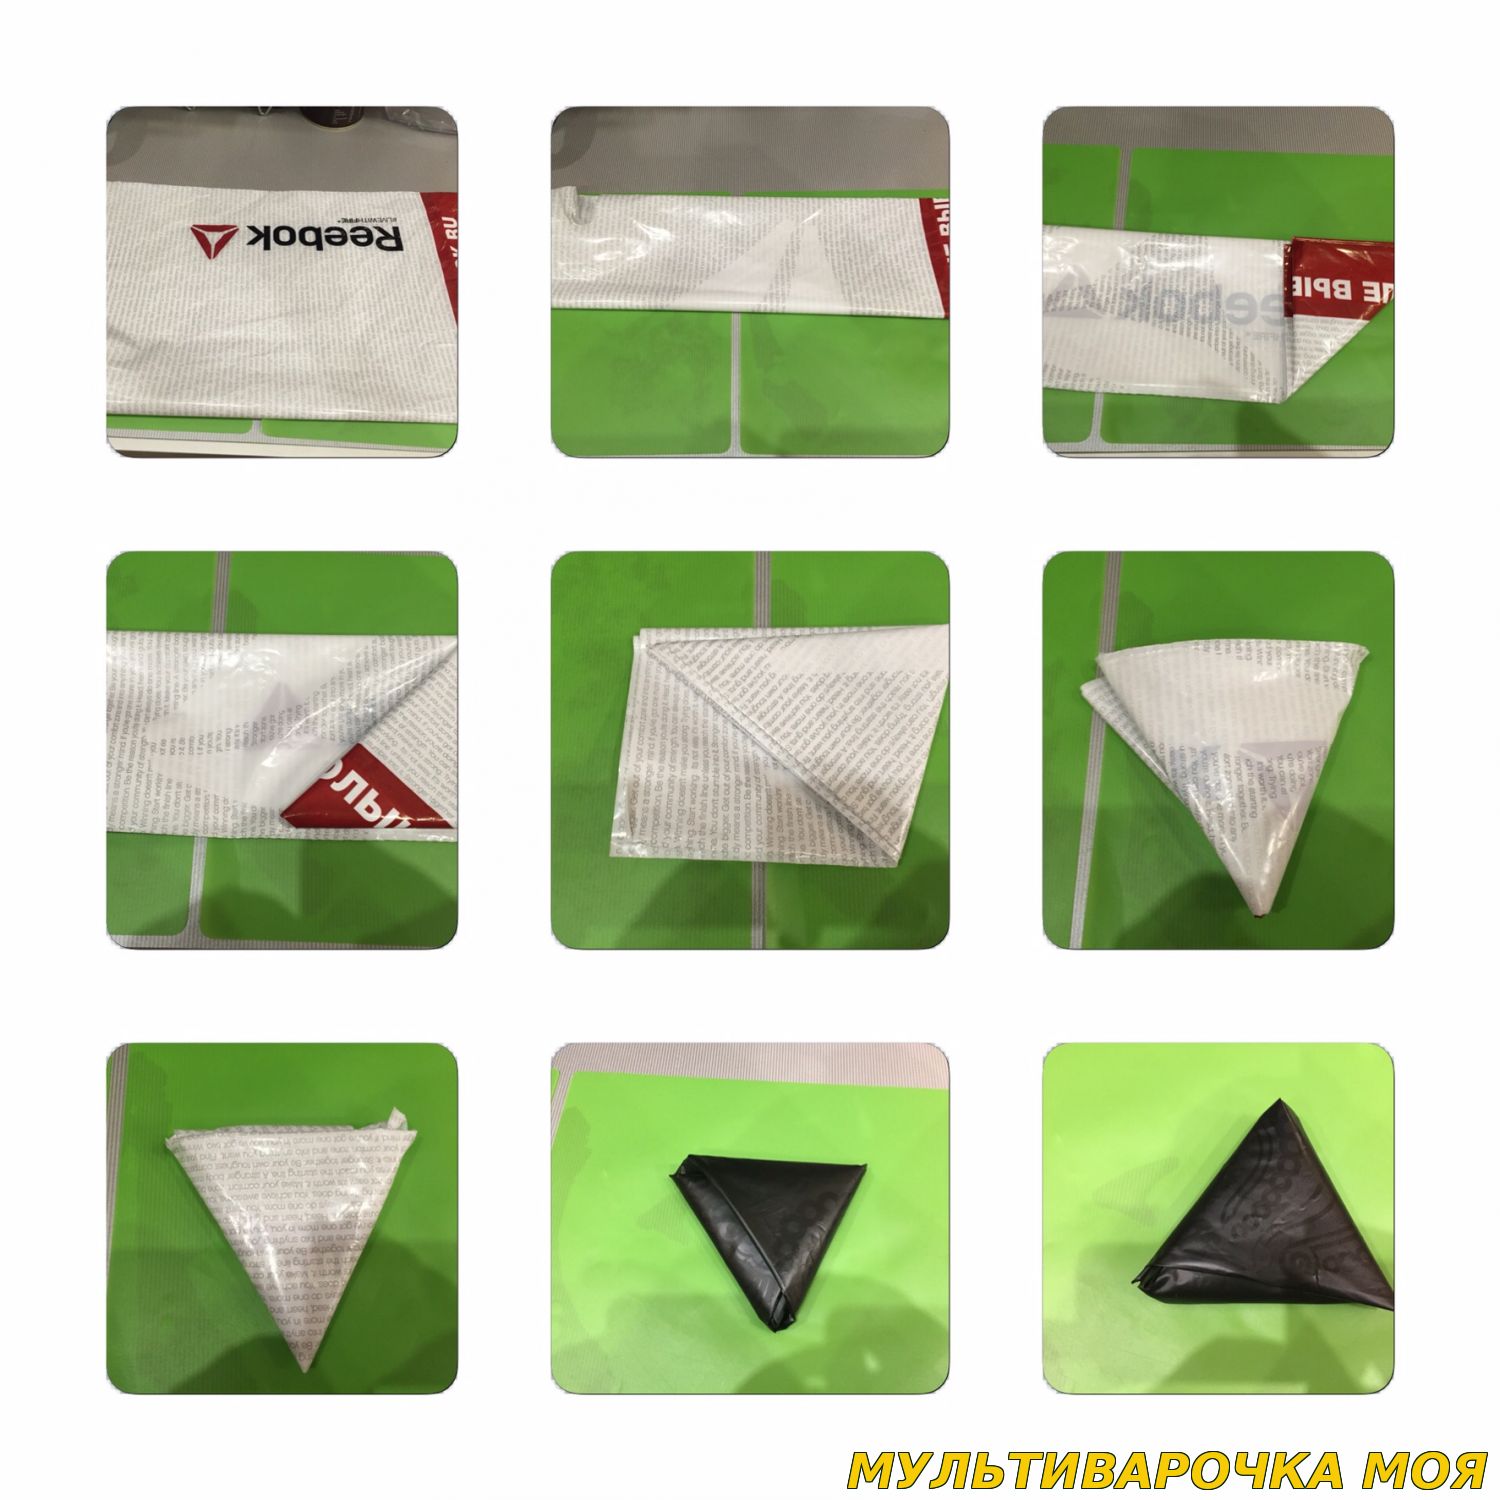 Как сложить пакет треугольником: простая и действенная методика от эксперта